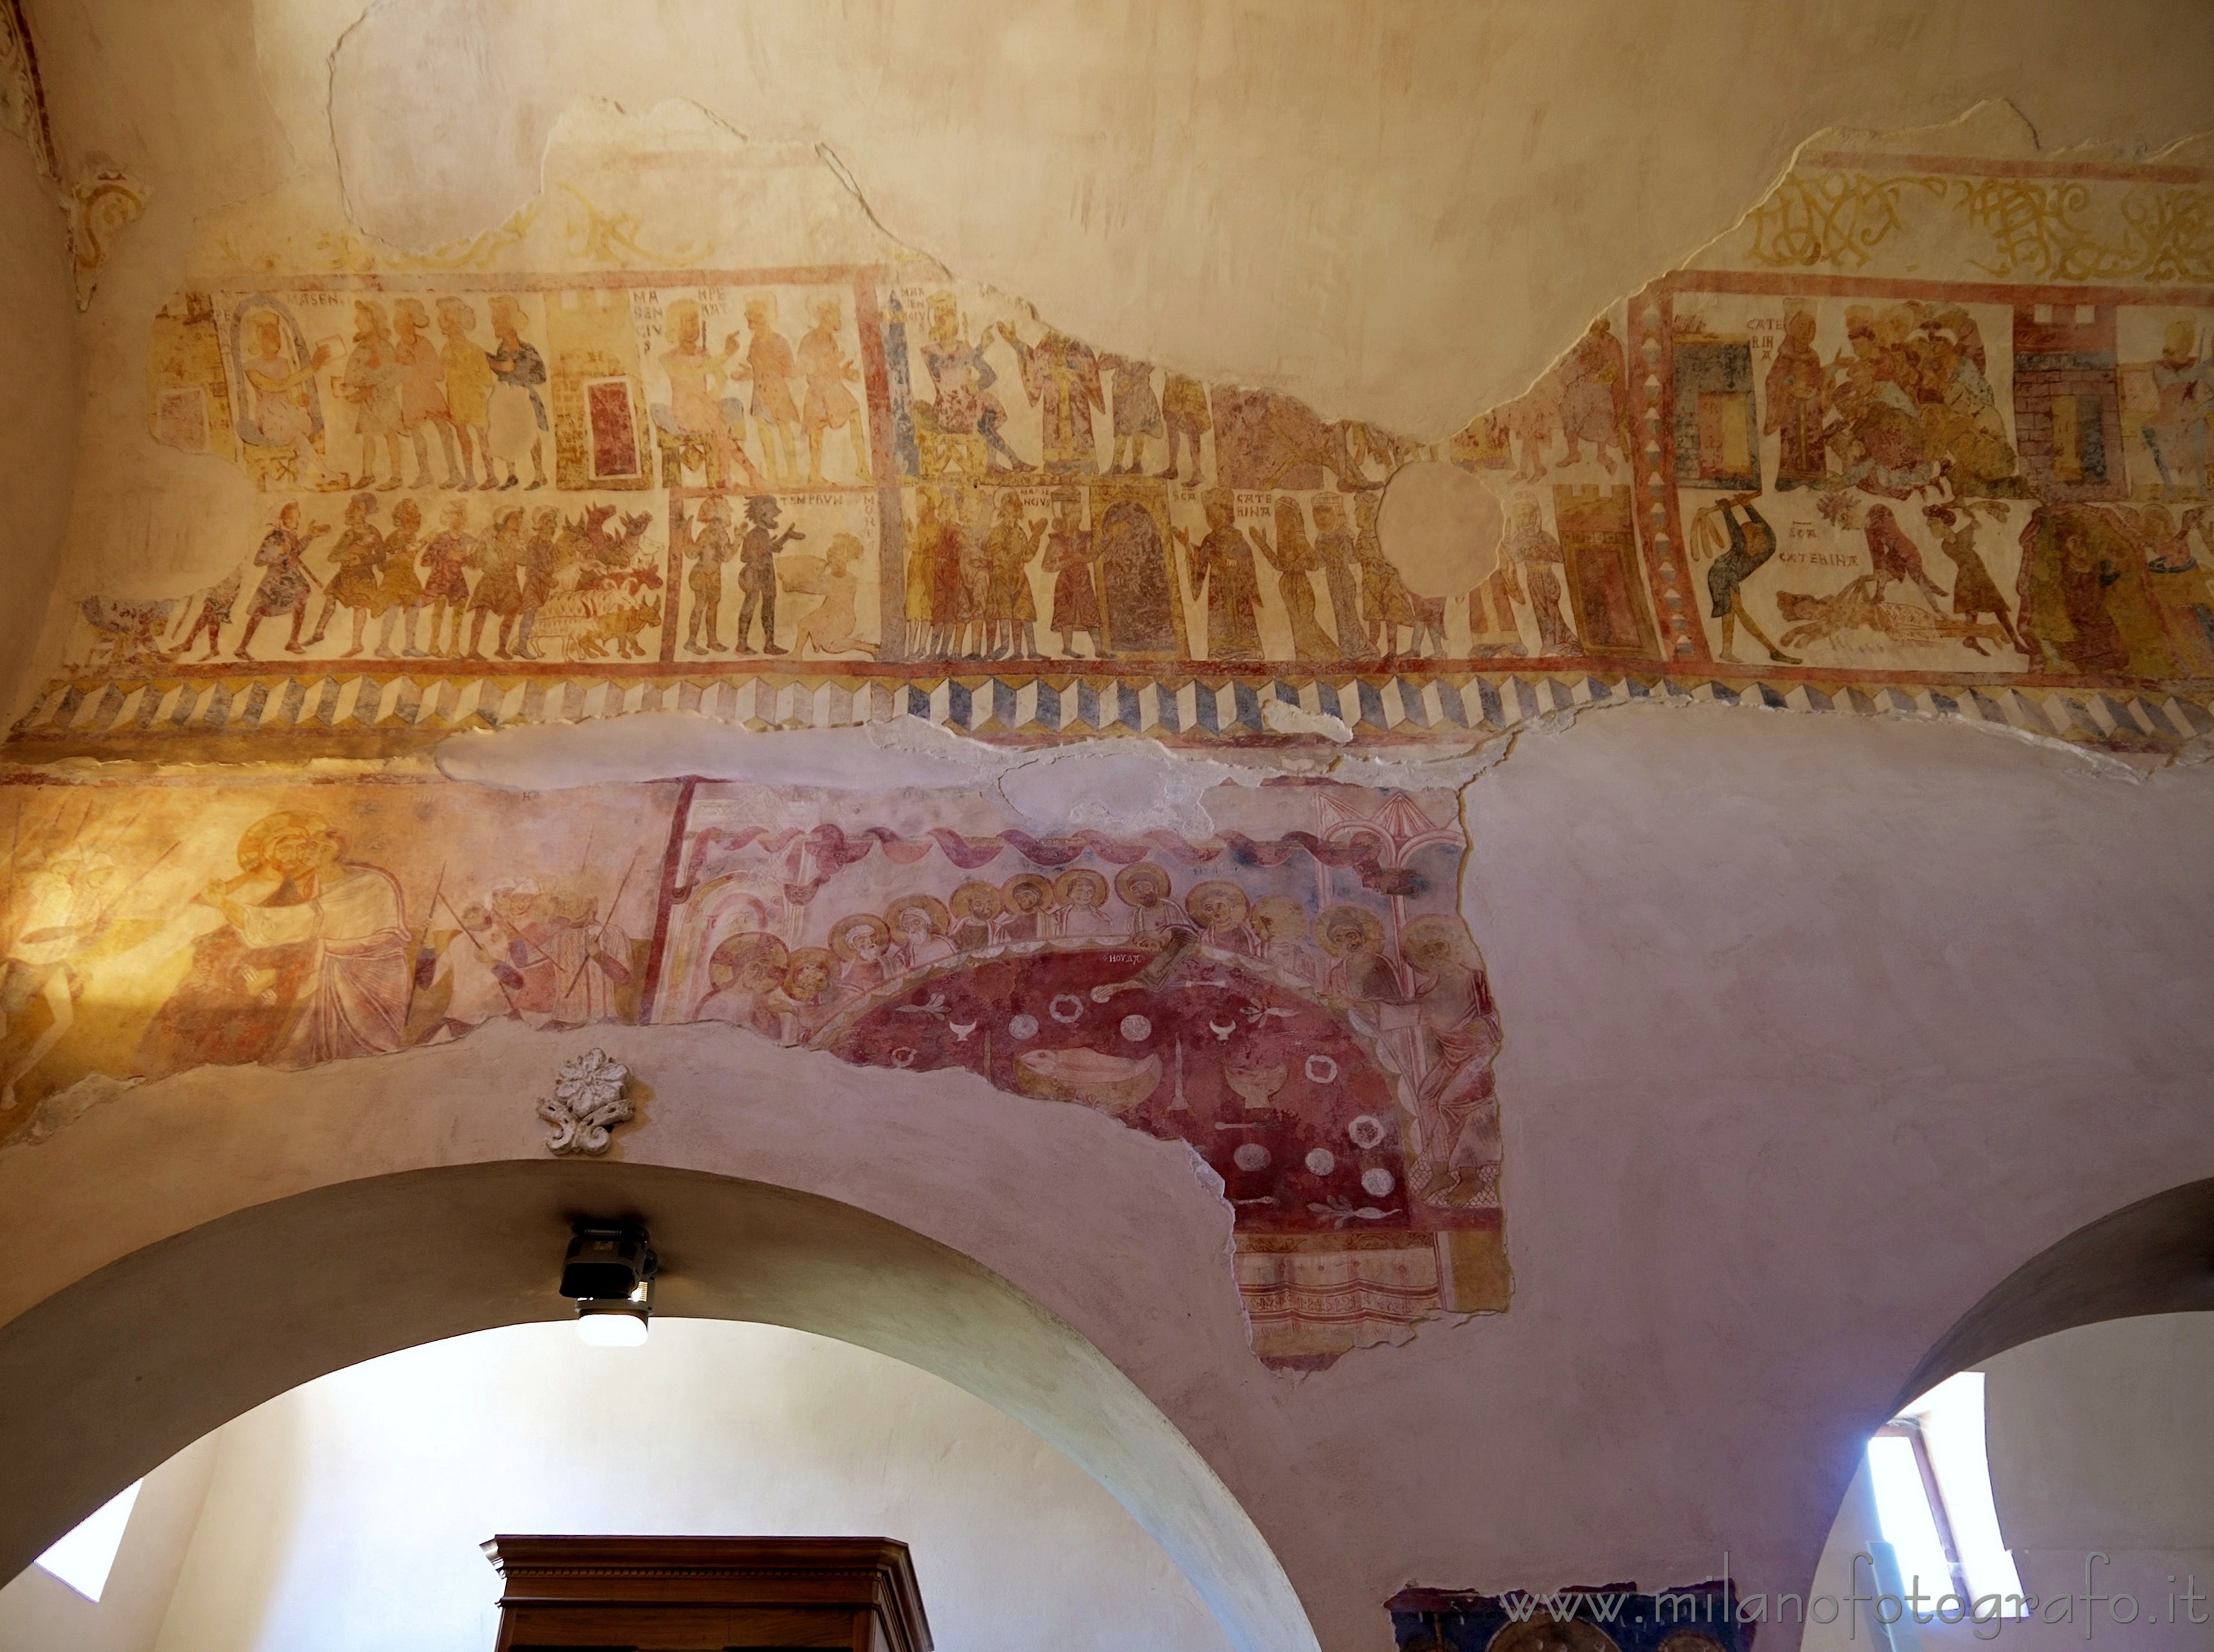 Casarano (Lecce, Italy): Byzantine frescos with the history of Santa Caterina da Alessandria - Casarano (Lecce, Italy)